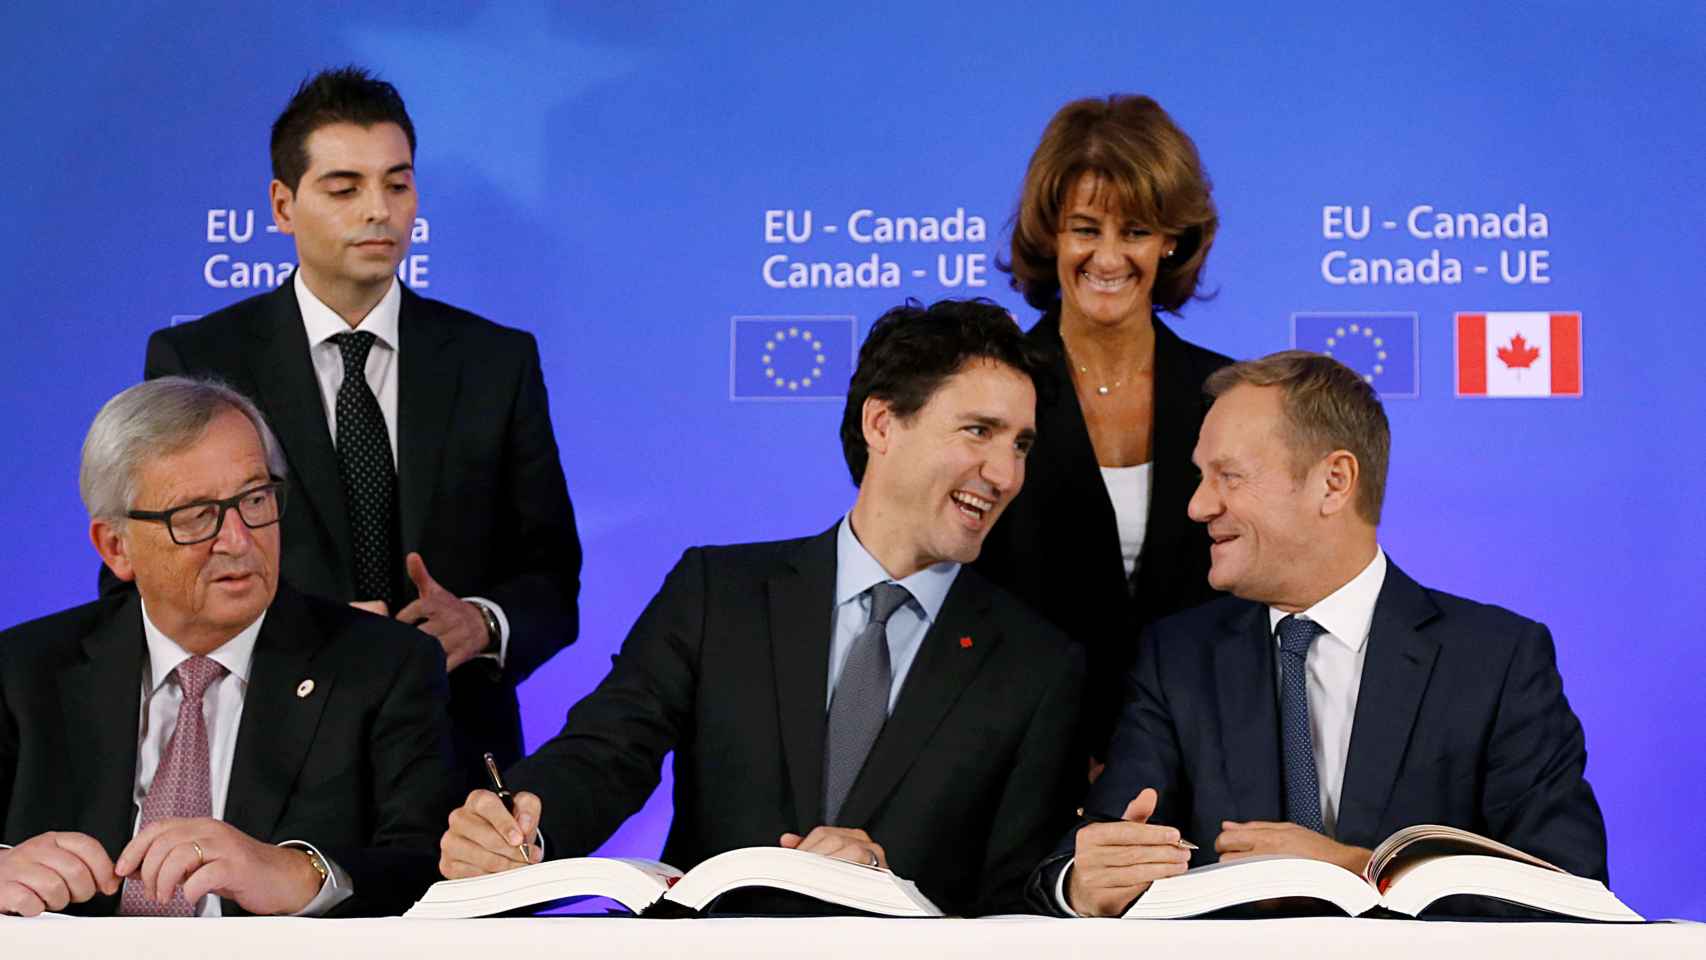 Comercio-Canada-Union_Europea-Economia_166995327_20362922_1706x960.jpg